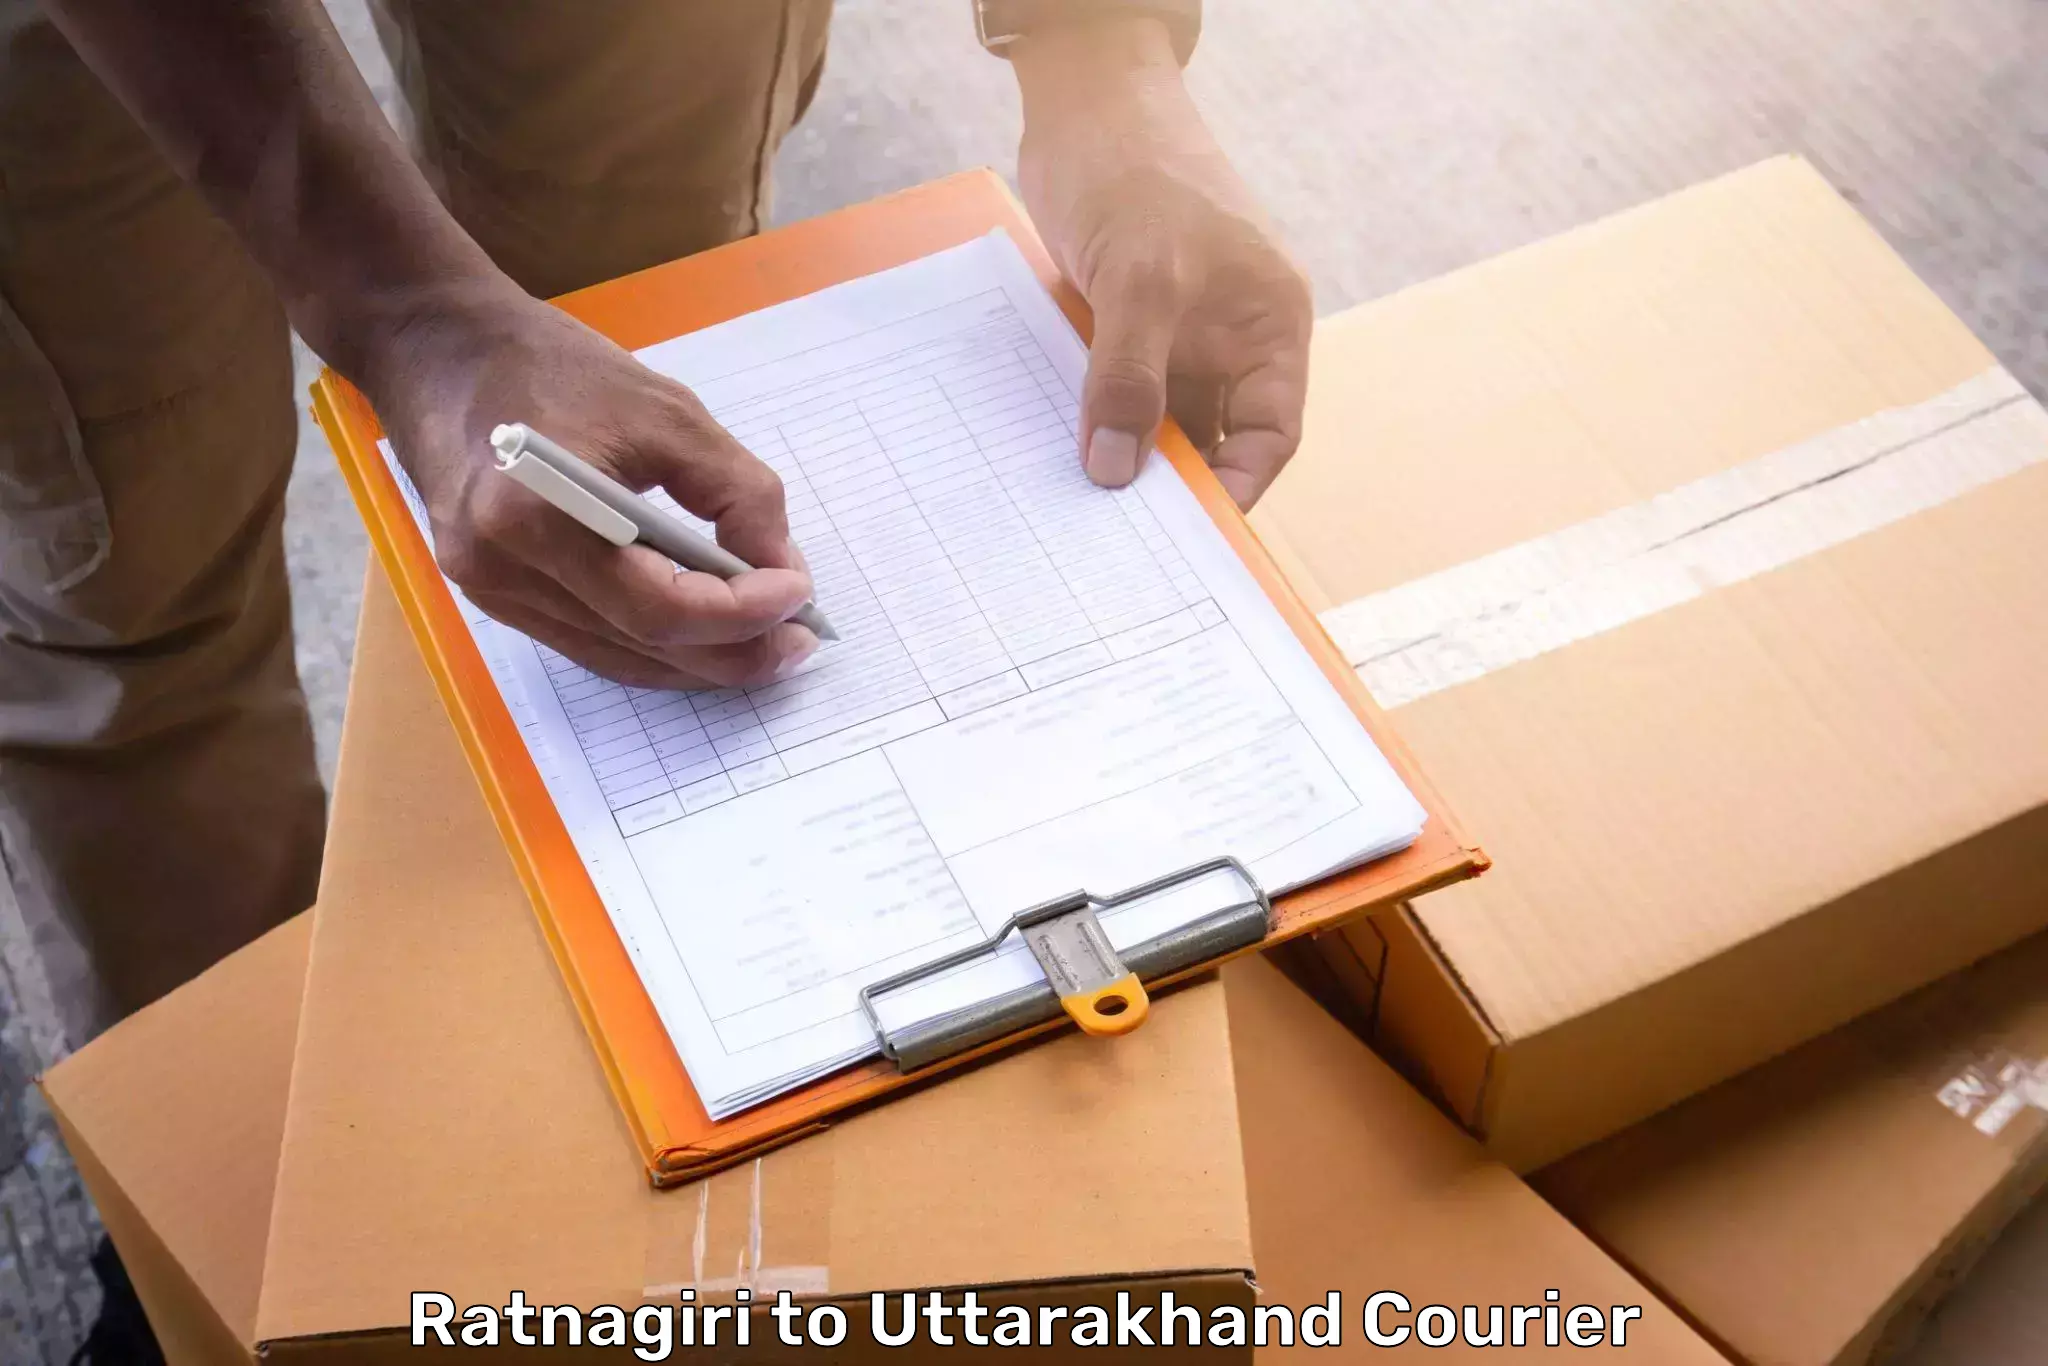 Luggage shipment processing Ratnagiri to Rishikesh